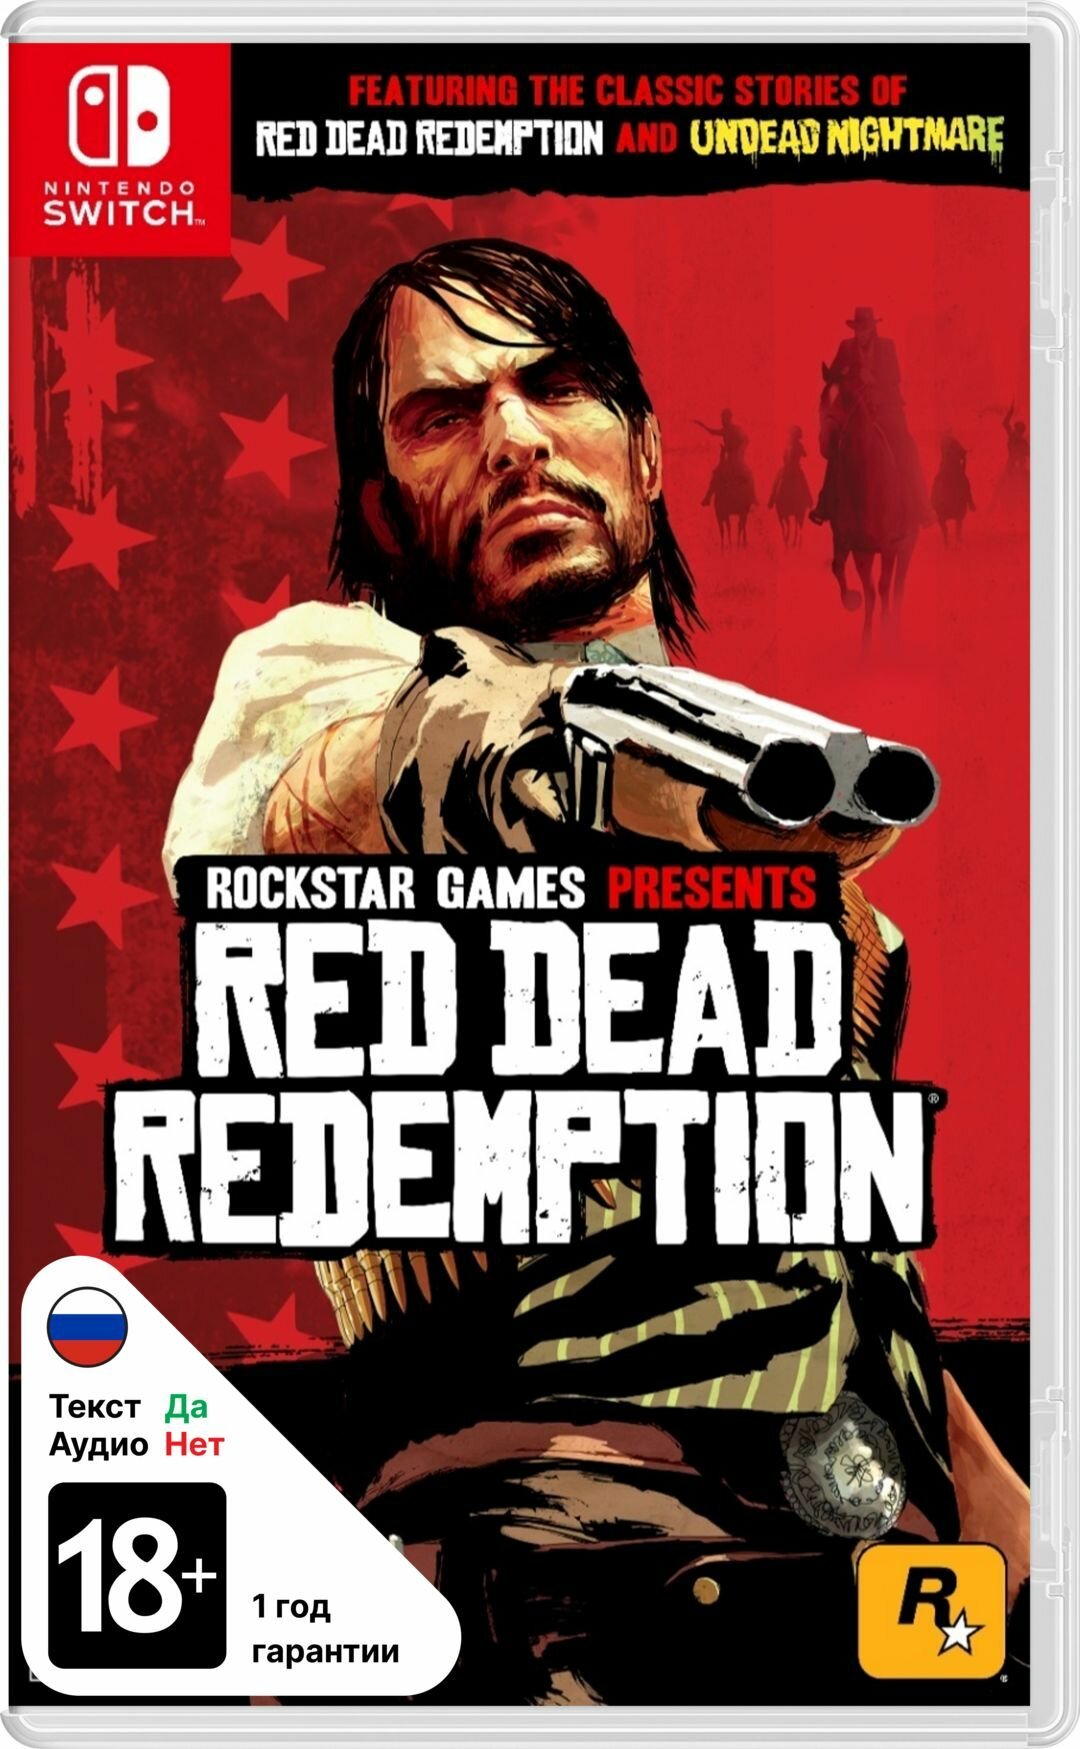 Игра Nintendo Switch на картридже Red Dead Redemption русские субтитры - английская озвучка